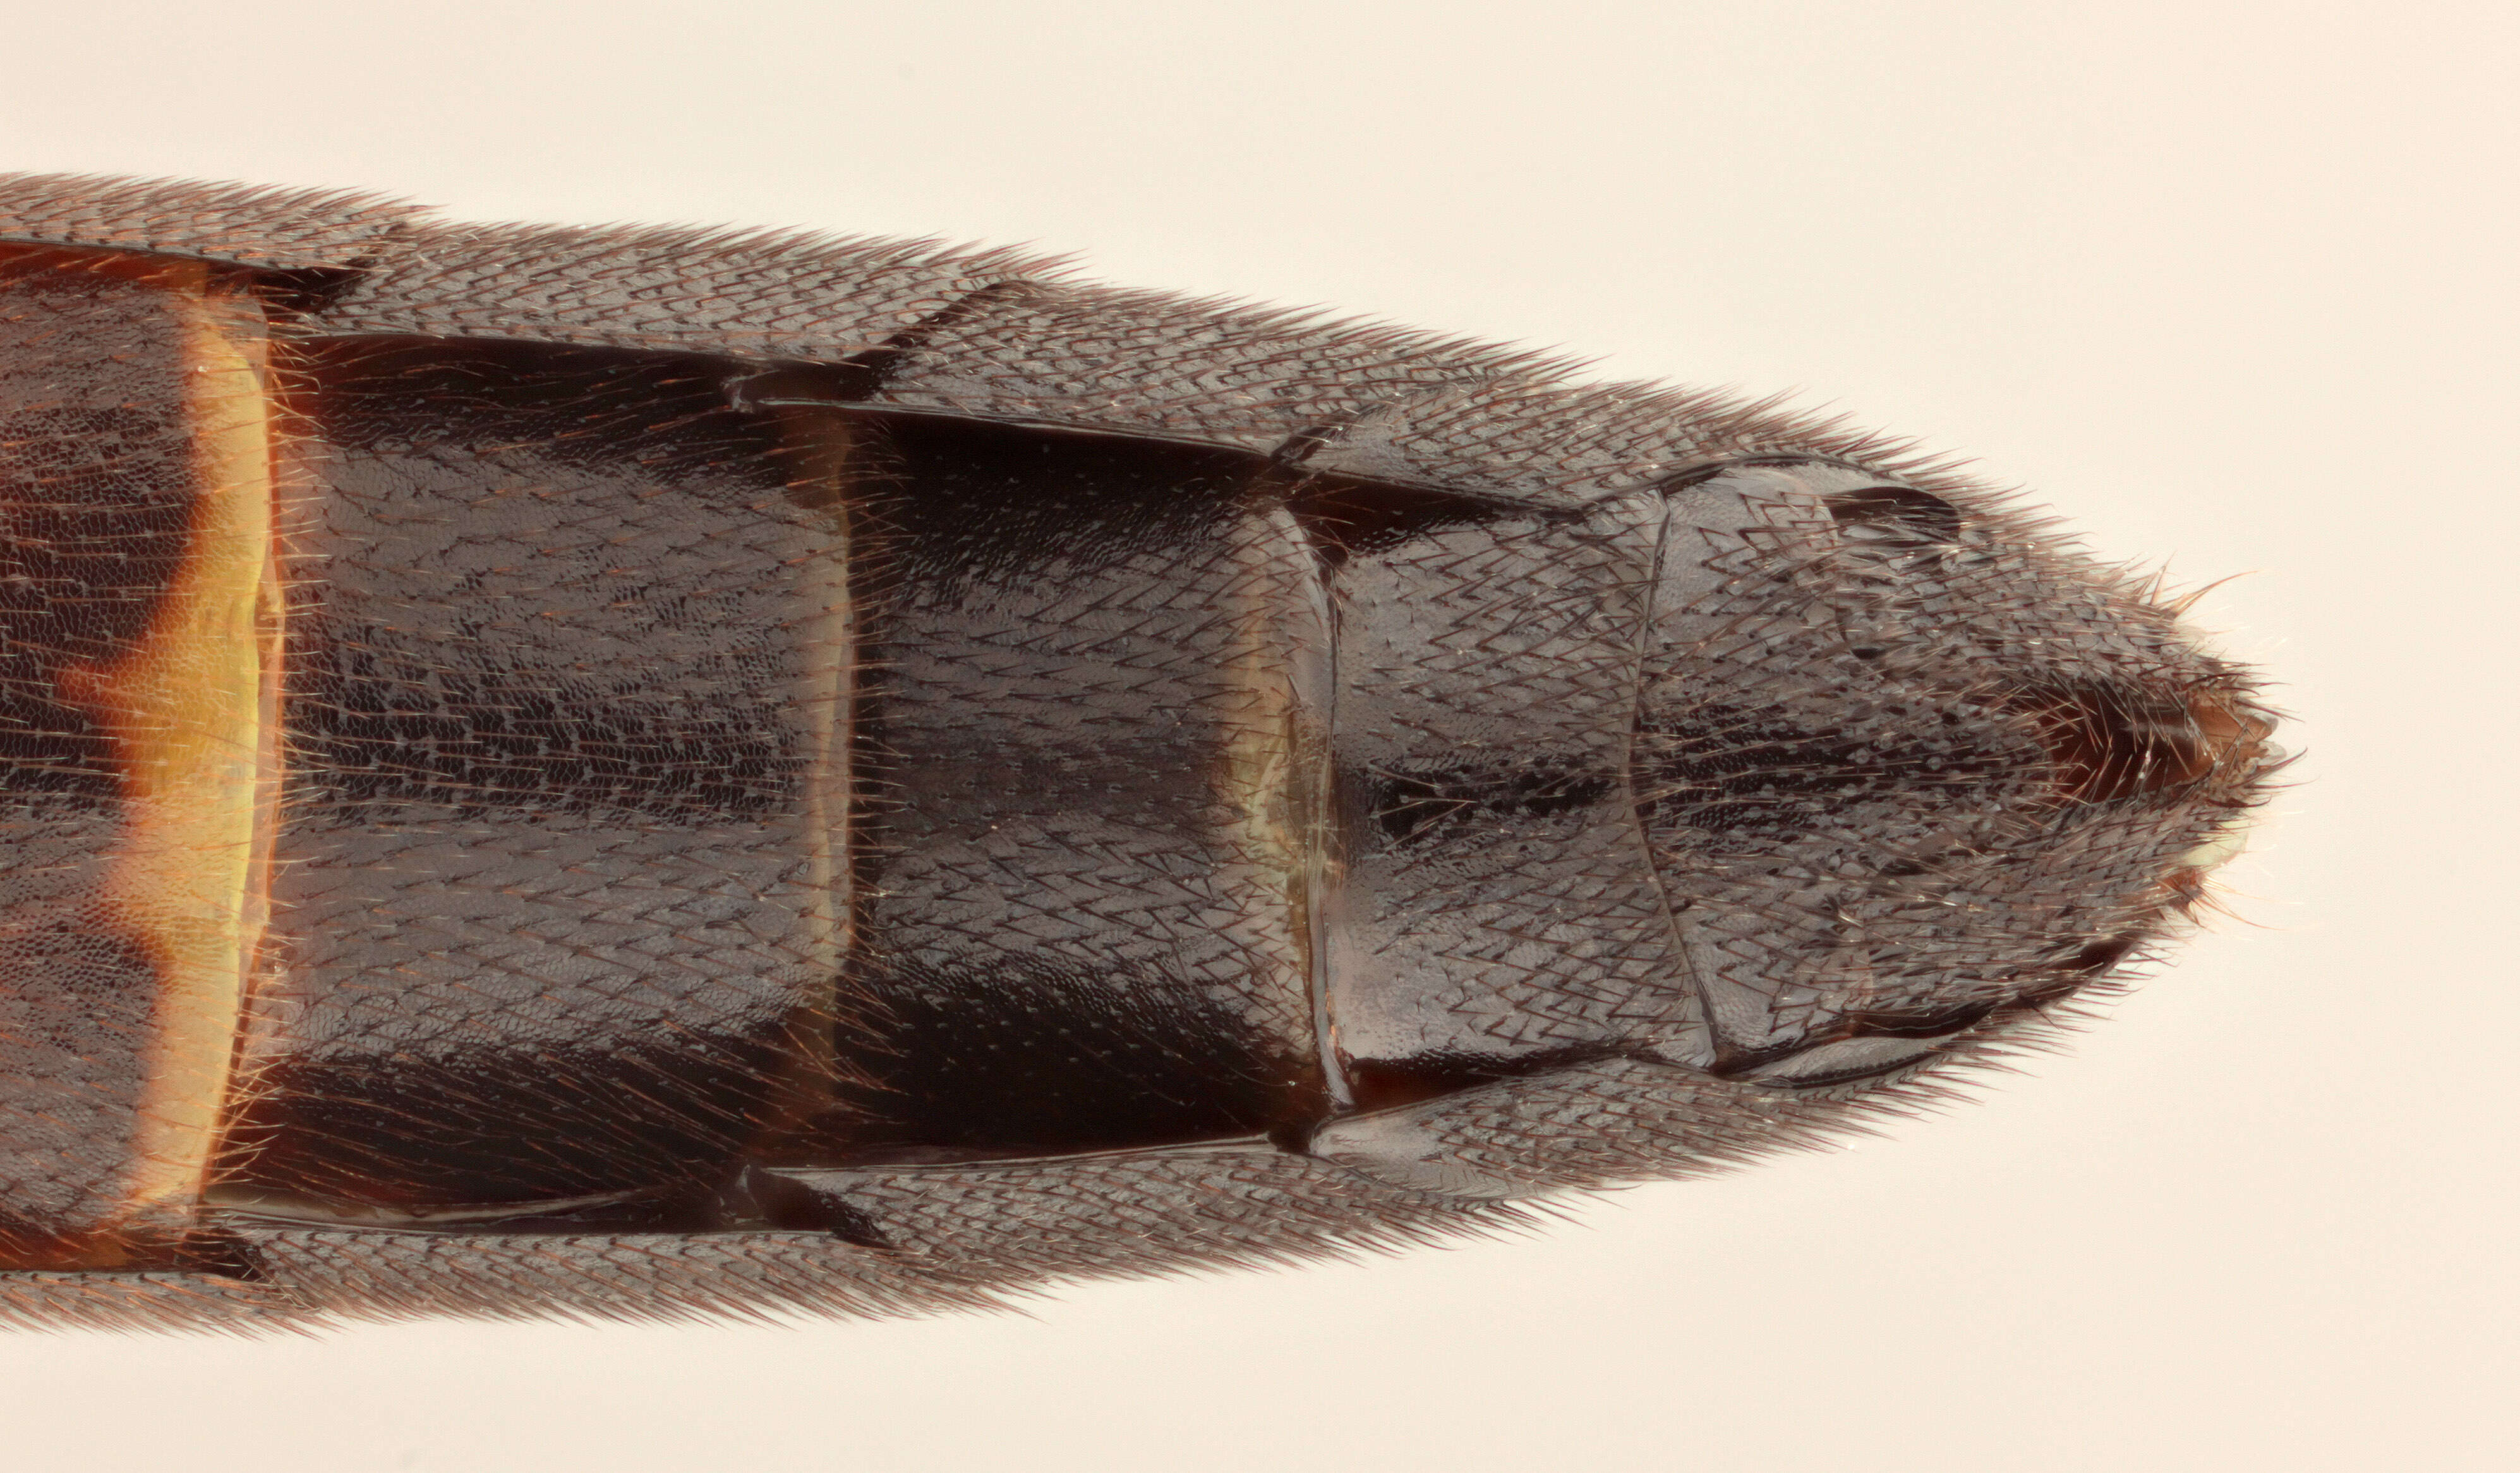 Image of Spilichneumon ammonius (Gravenhorst 1820)